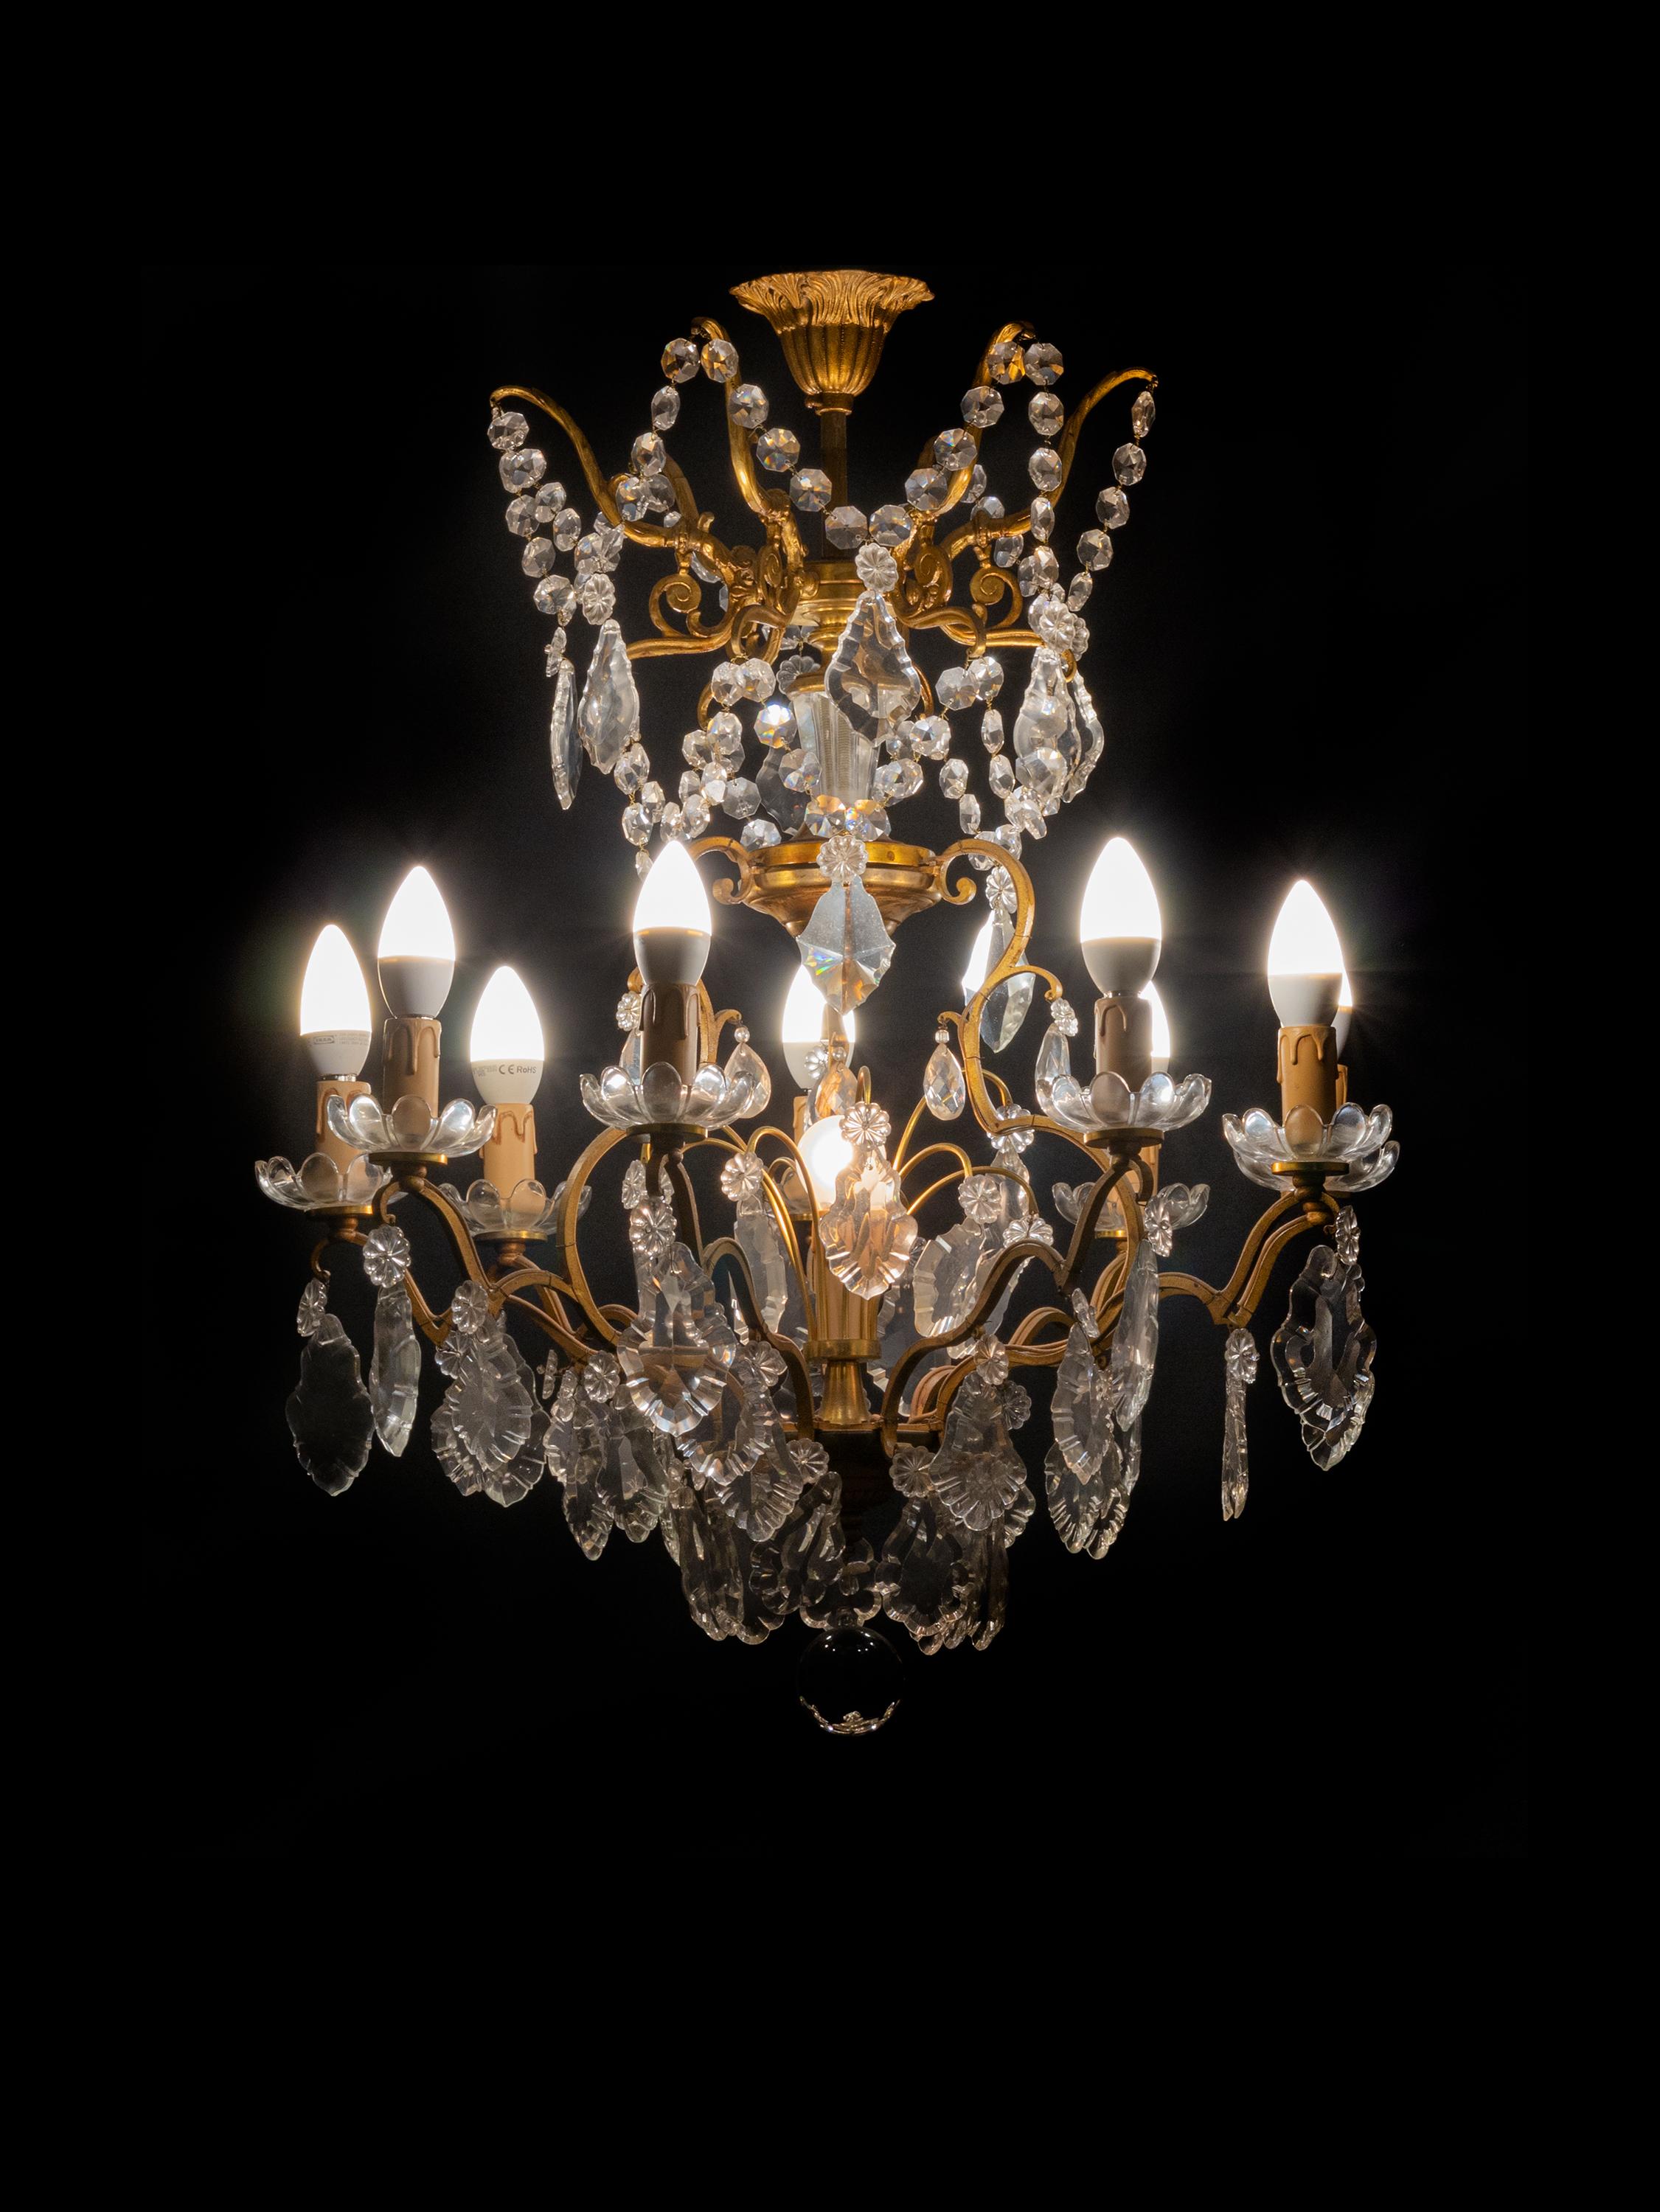 Ein klassischer Kronleuchter im Stil Louis XV mit 9 Armen und 10 Lampen (9 Lampen und 1 zentrale Lampe).
Der vergoldete Metallrahmen ist mit verschieden großen Kristallplaketten bestückt.
Ursprünglich mit Kerzen beleuchtet, jetzt vollständig